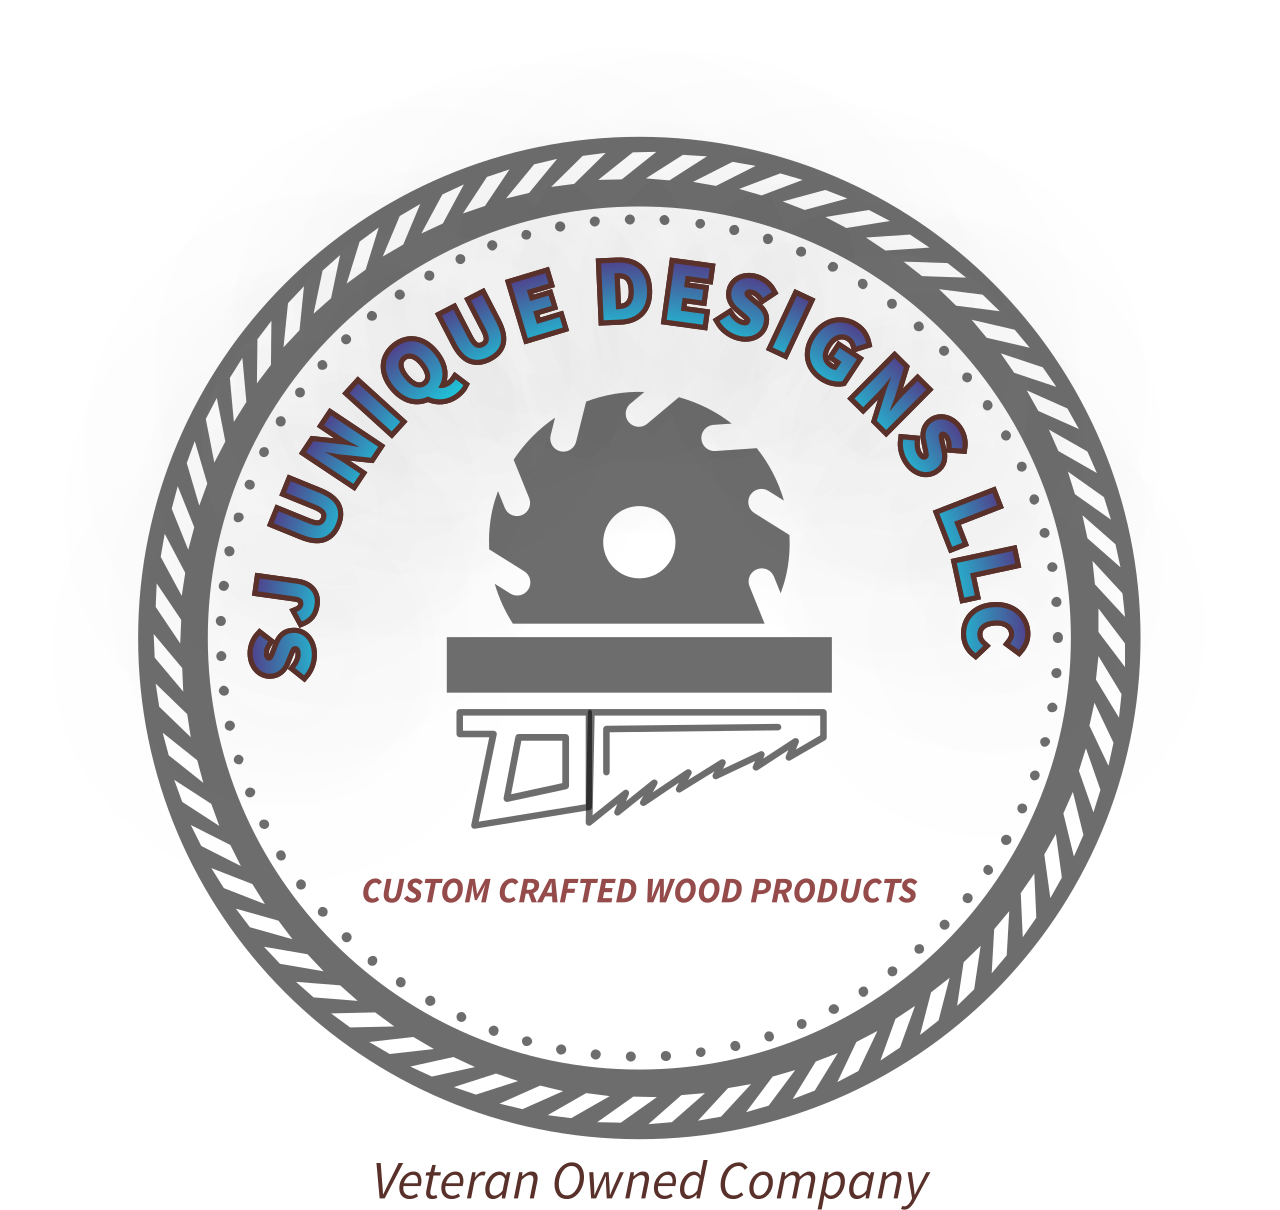 SJ UNIQUE DESIGNS LLC 's logo